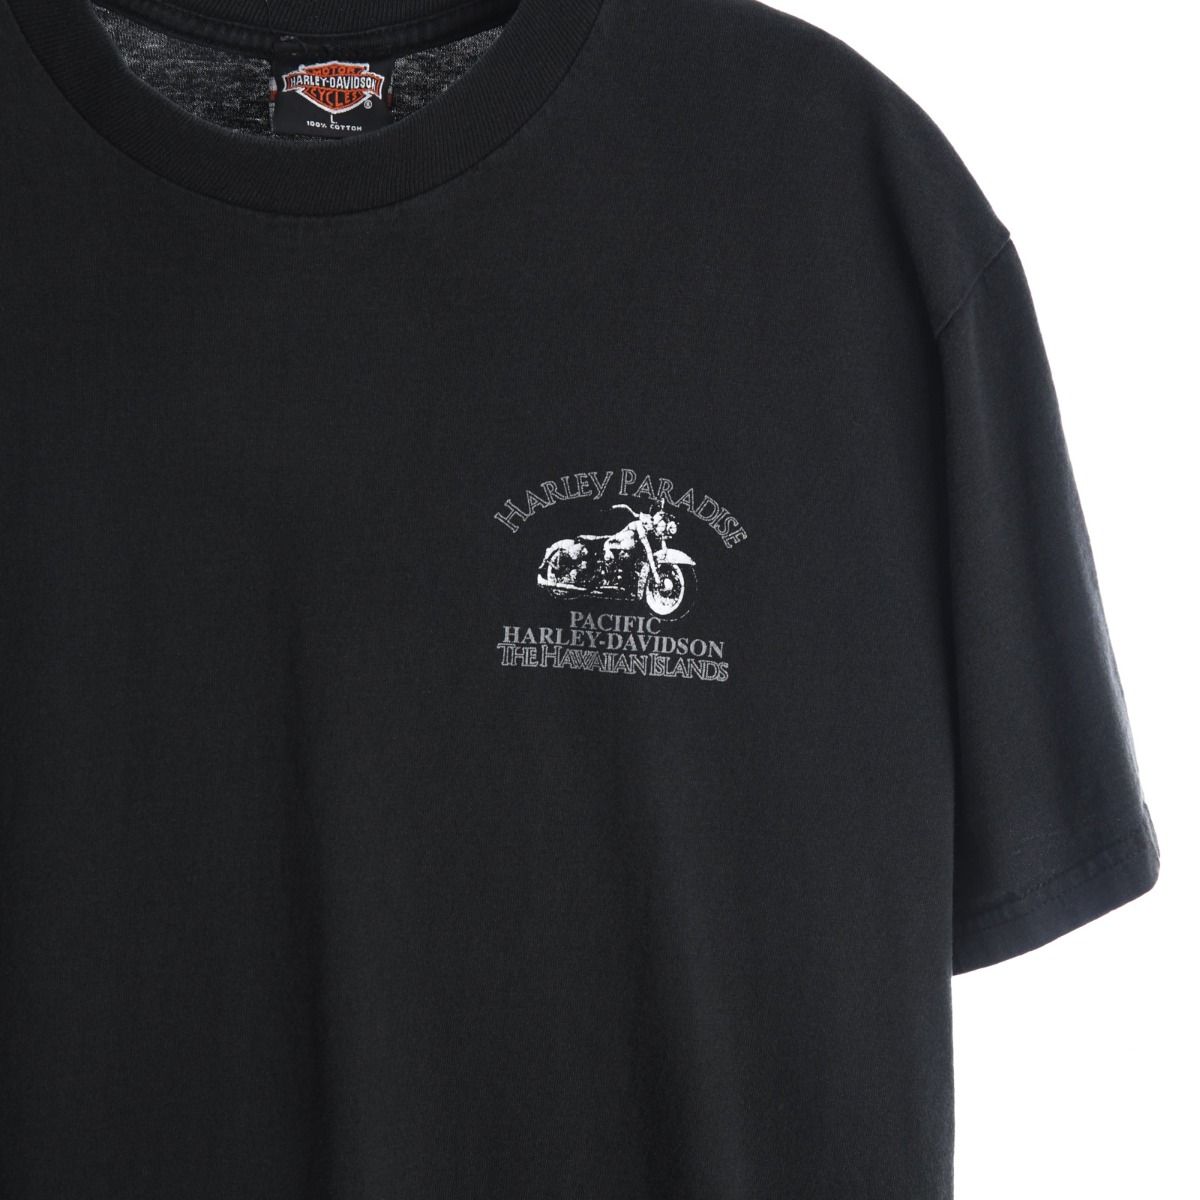 Harley Davidson 1996 T-Shirt